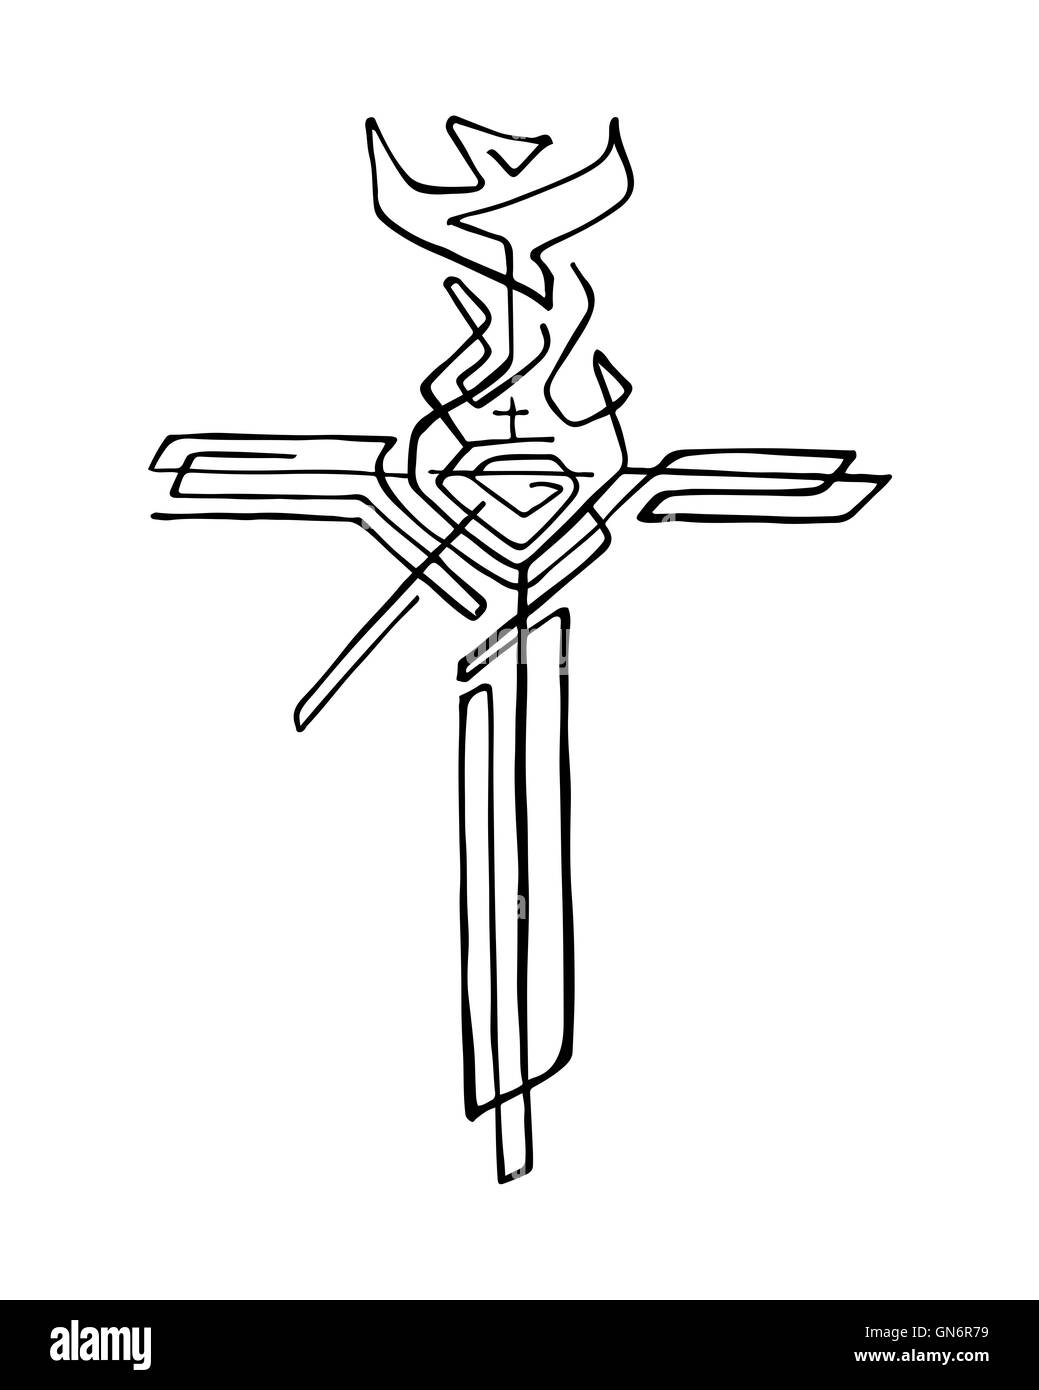 Disegnata a mano immagine o disegno di un religioso croce con simboli diversi Foto Stock